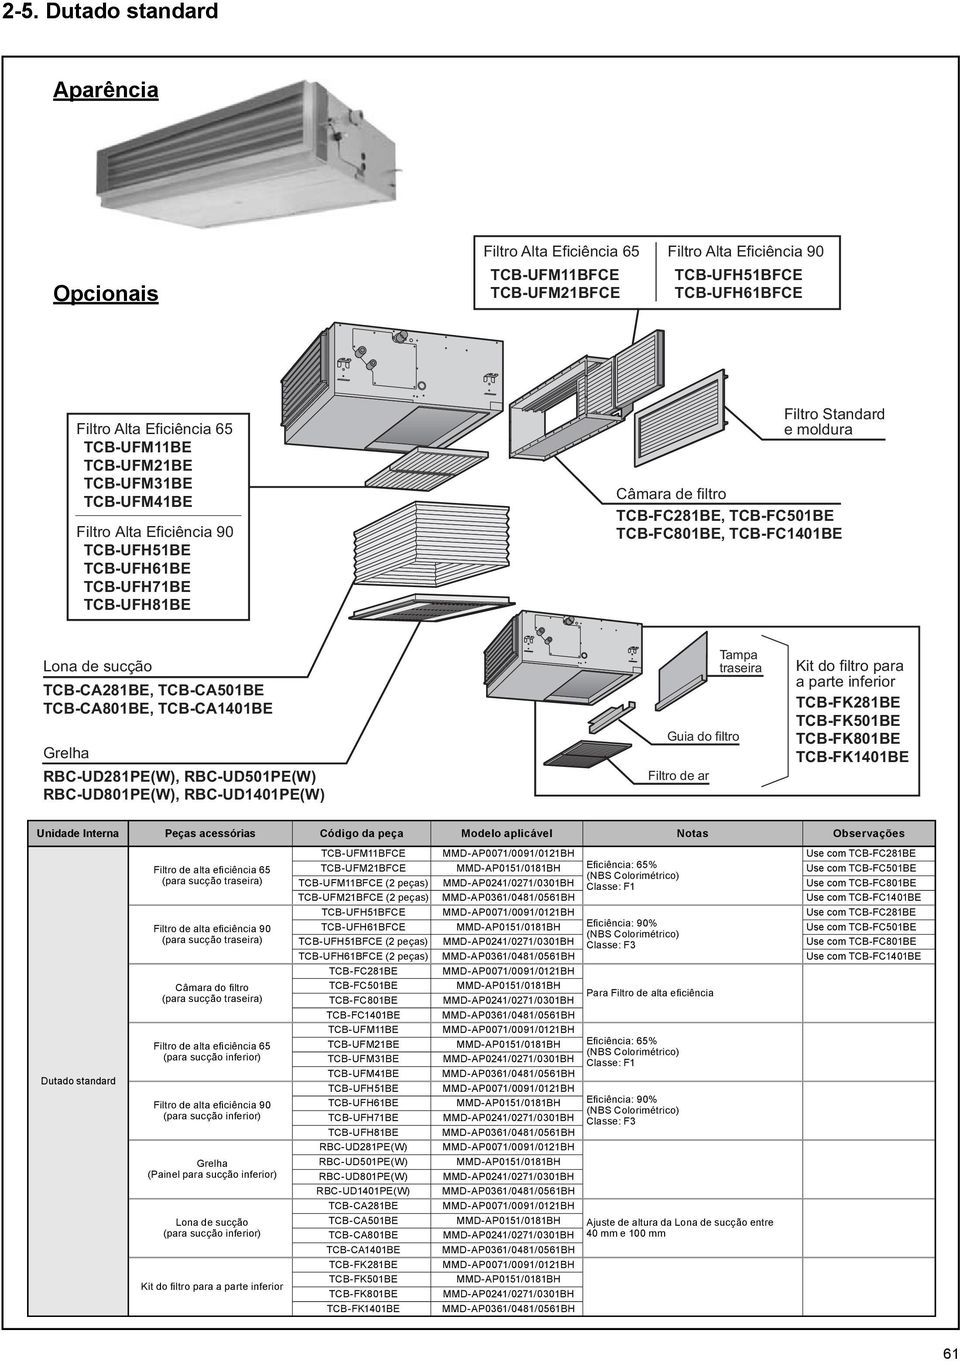 sucção TCB-CA281BE, TCB-CA501BE TCB-CA801BE, TCB-CA1401BE Grelha RBC-UD281PE(W), RBC-UD501PE(W) RBC-UD801PE(W), RBC-UD1401PE(W) Guia do filtro Filtro de ar Tampa traseira Kit do filtro para a parte